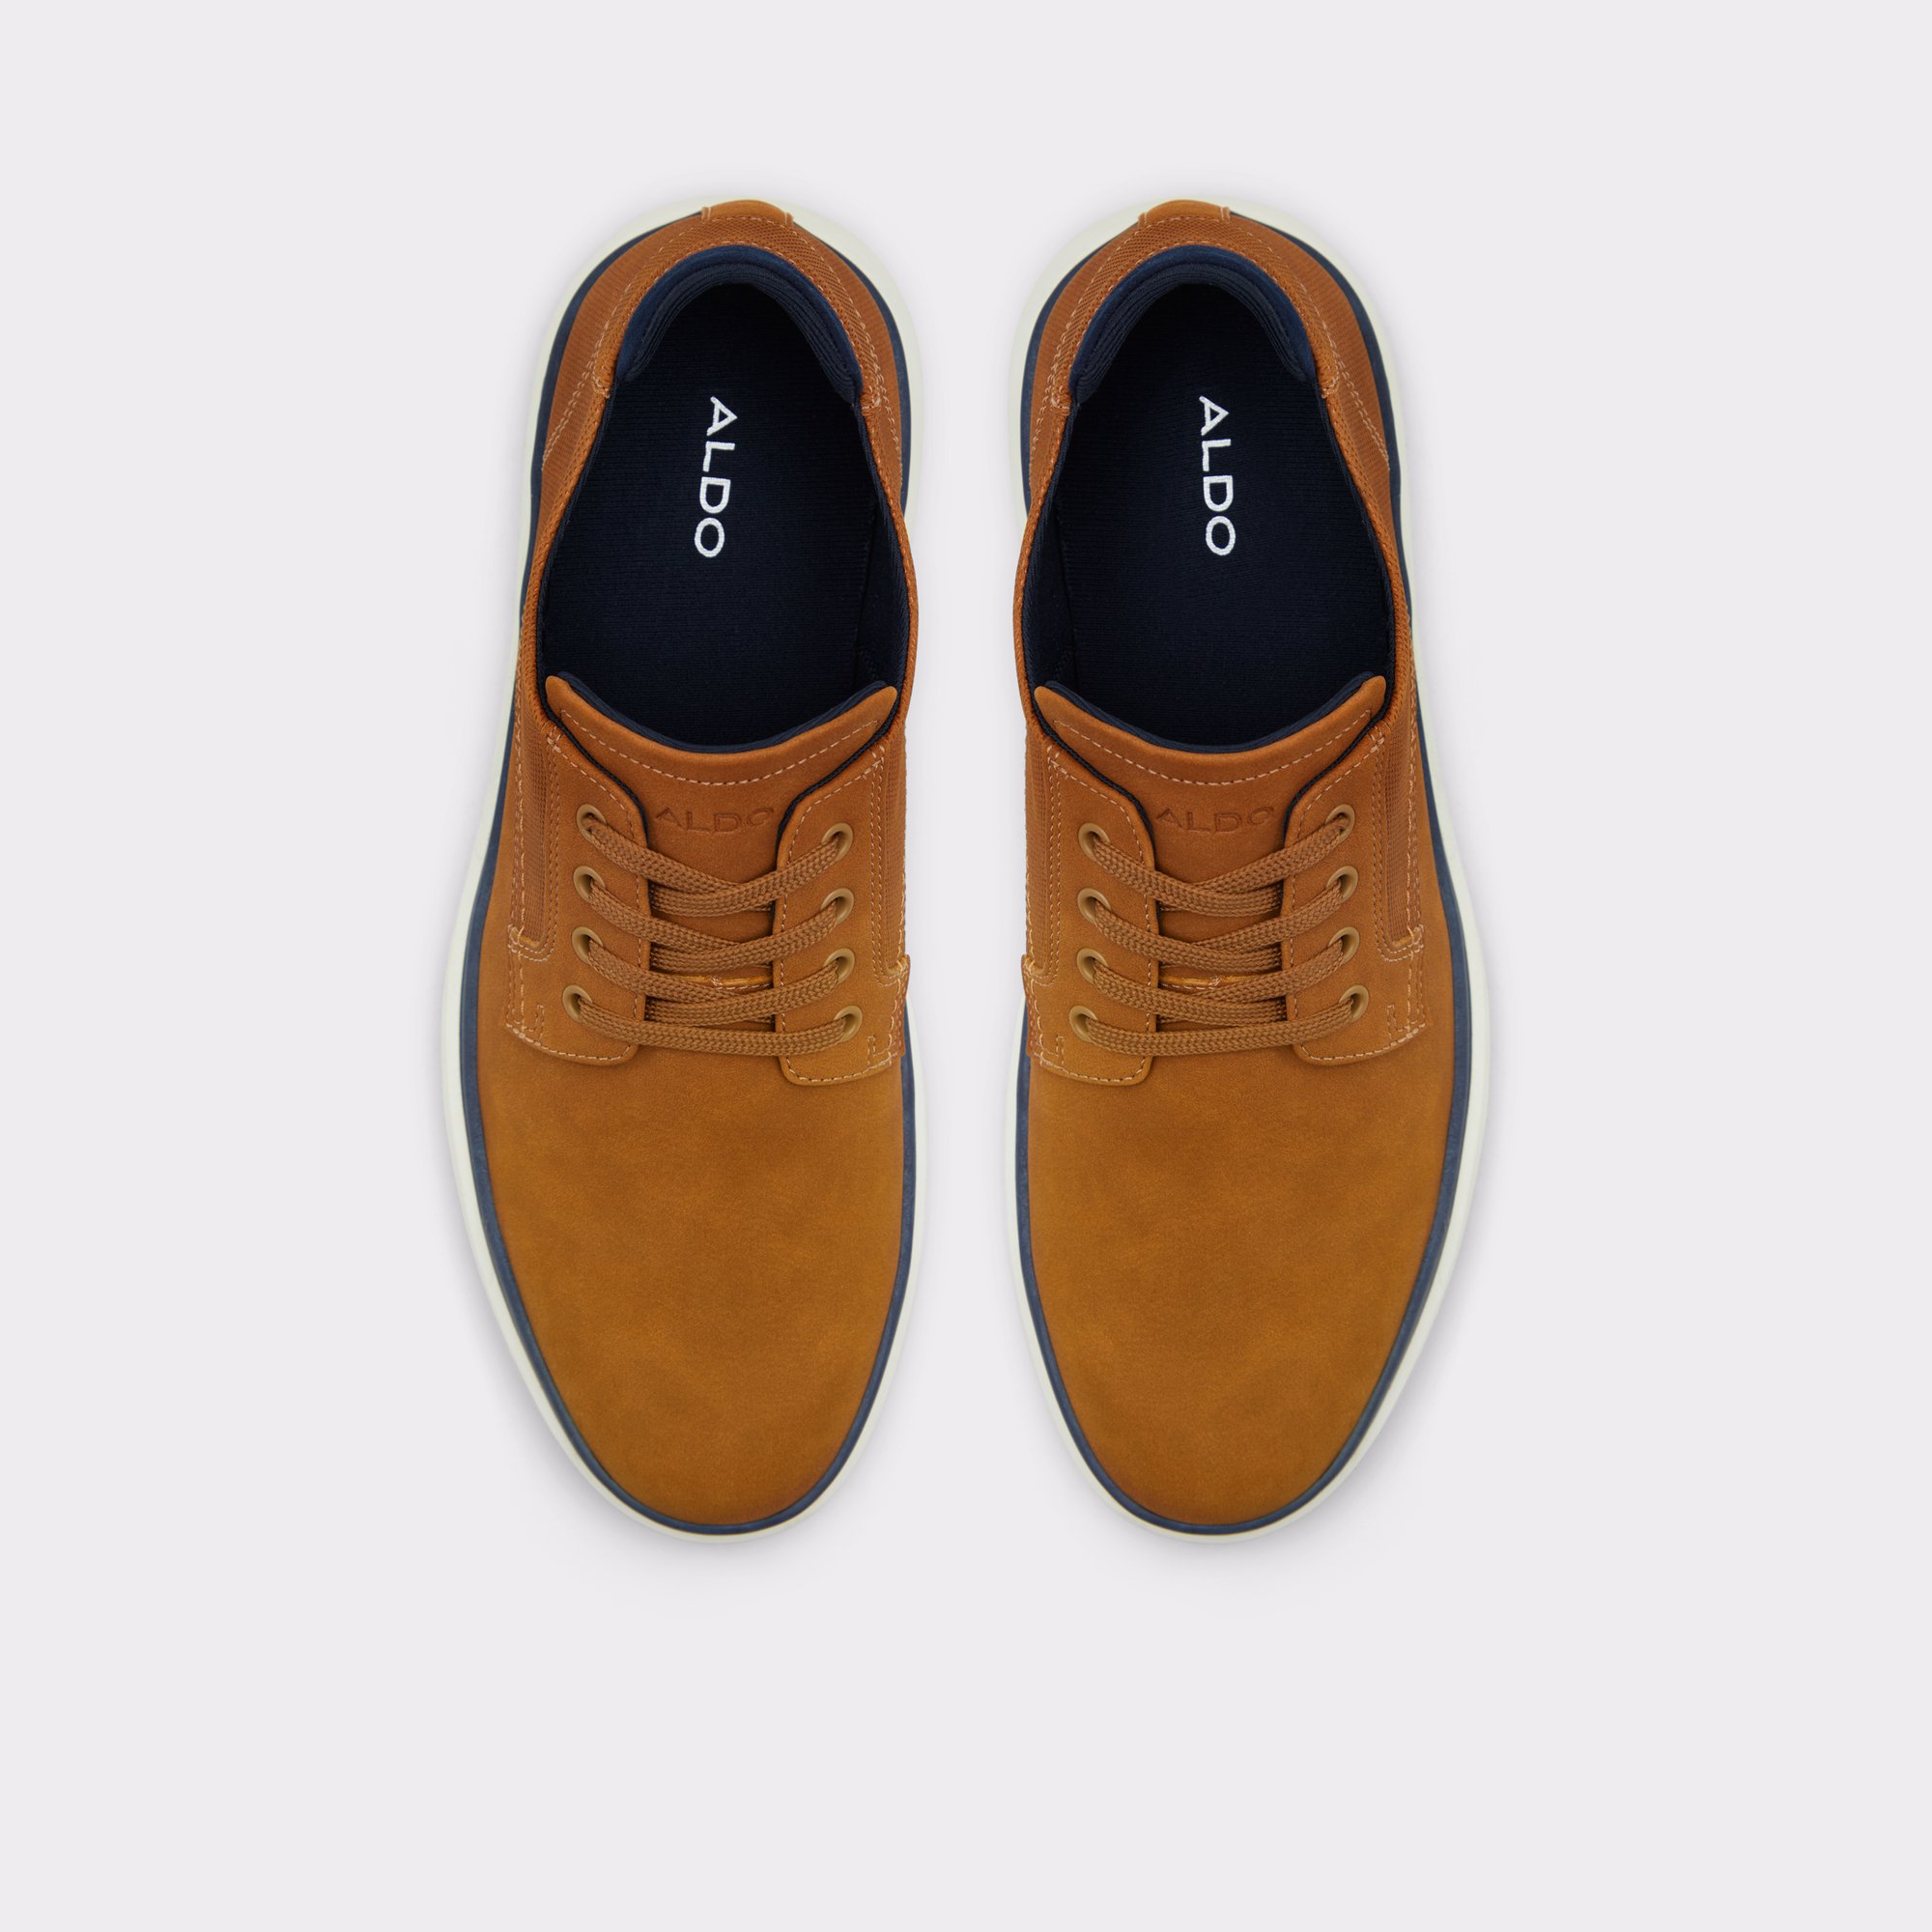 Grouville Cognac Men's Casual Shoes | ALDO Canada